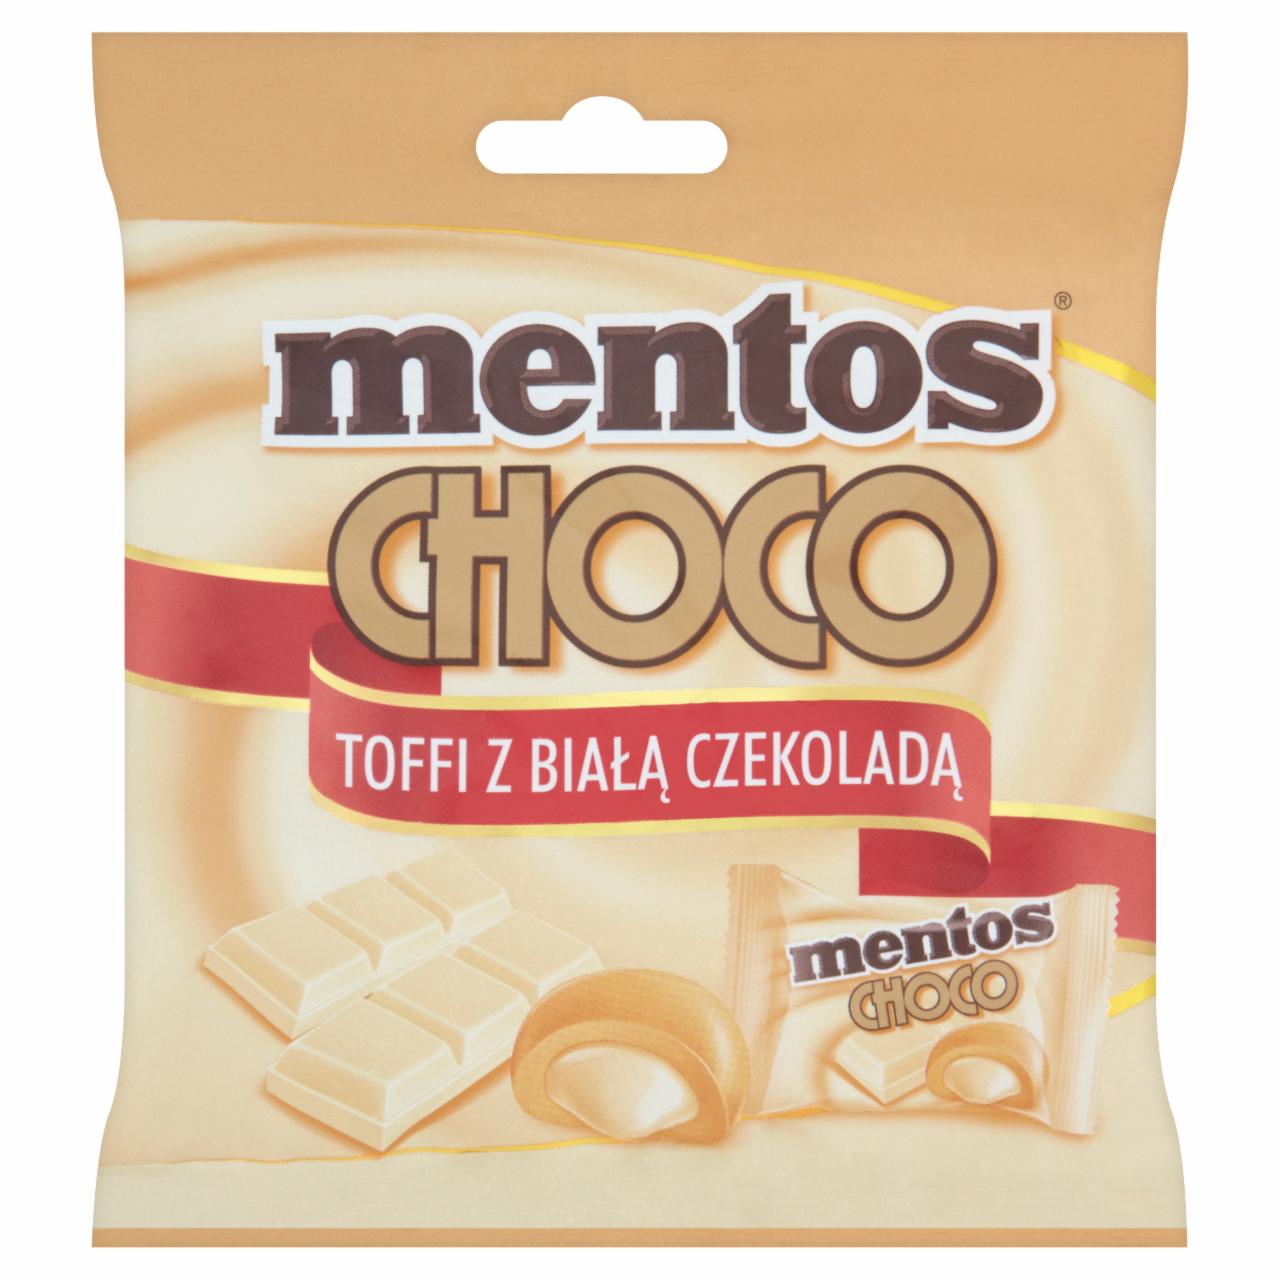 Zdjęcia - Mentos Choco Toffi z białą czekoladą 92 g